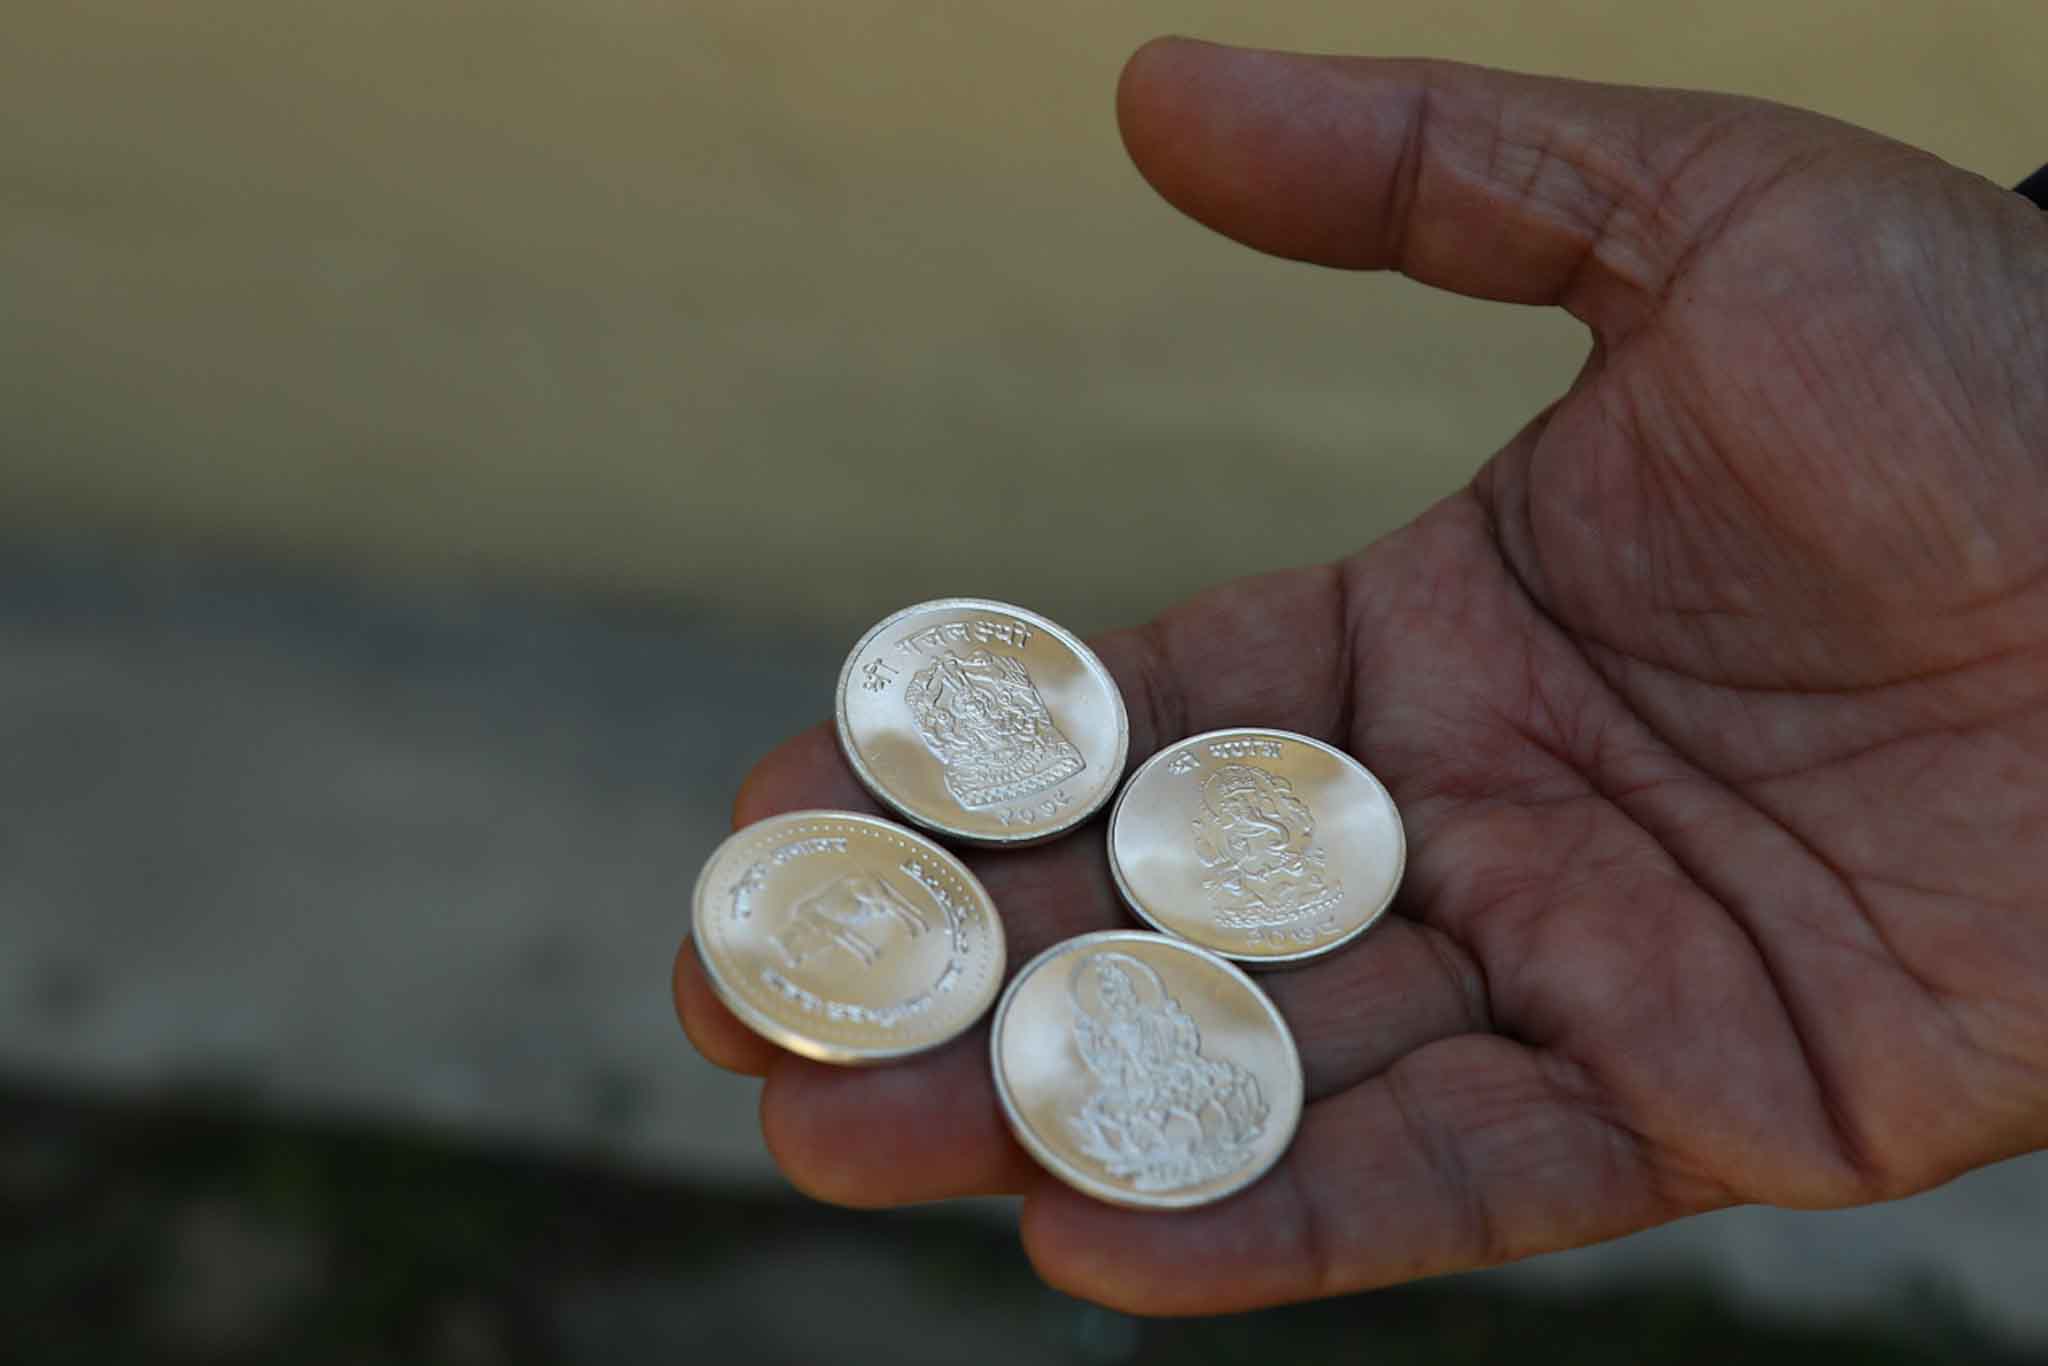 सुनको असर्फी र चाँदीको सिक्का बिक्री सुरु(फोटो फिचर)